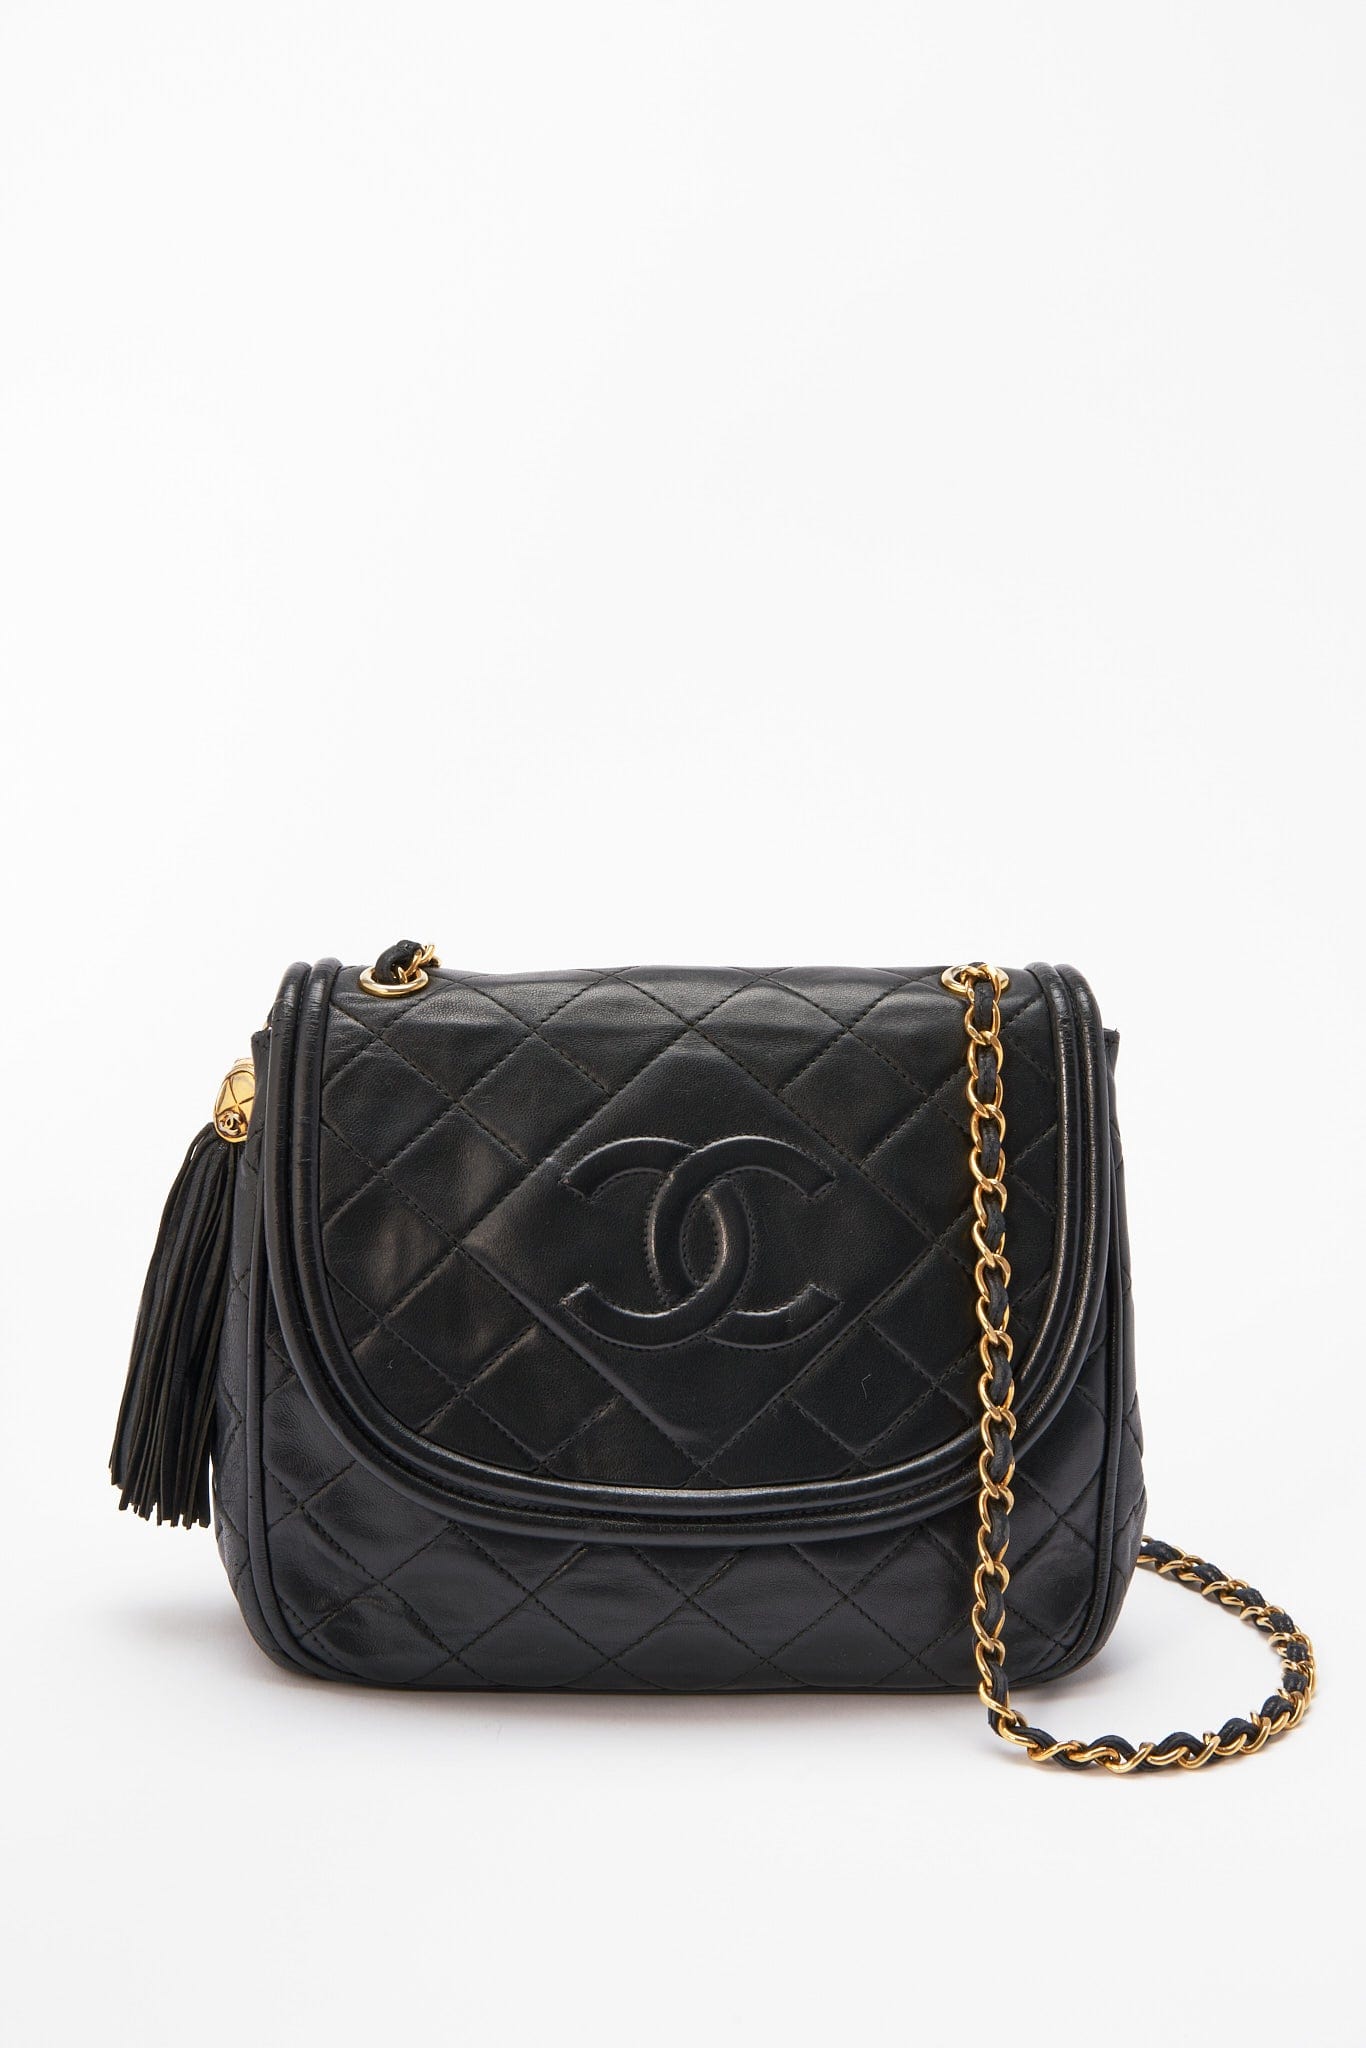 Chanel Black Lambskin Round Flap Bag Mini Q6B02X1IK9007